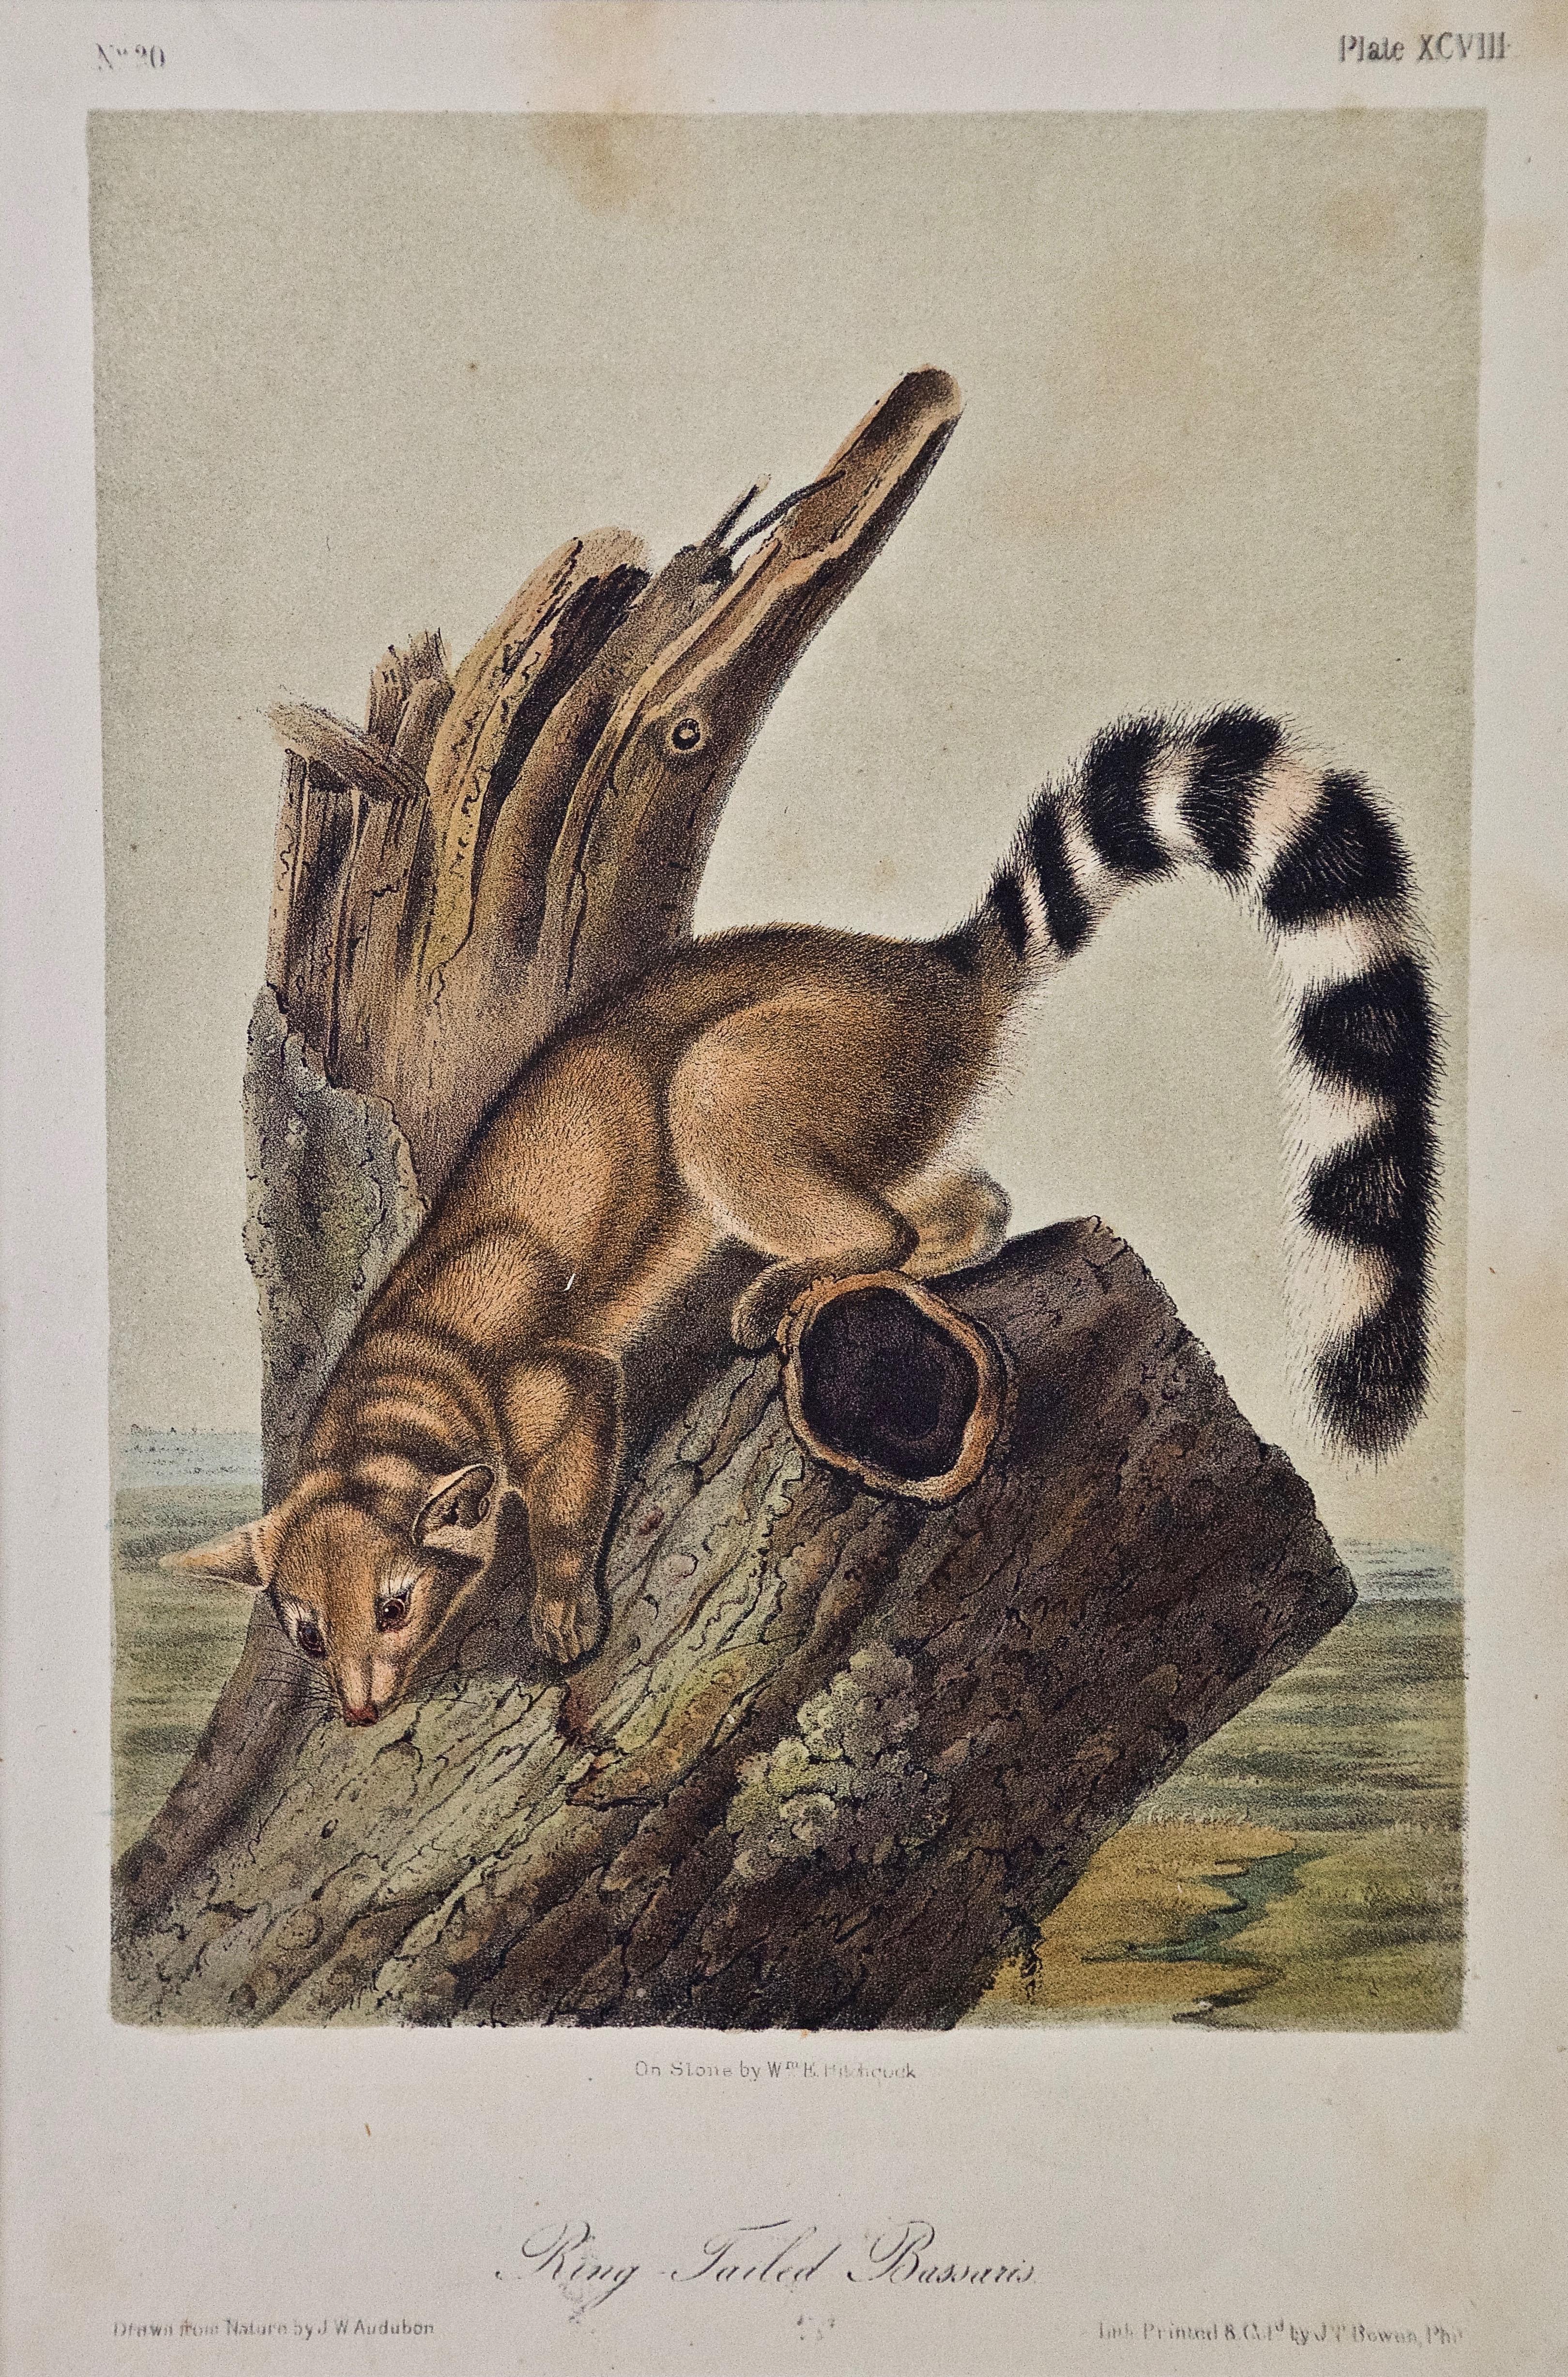 John James Audubon Animal Print - Original Audubon Hand Colored Lithograph of a "Ring Tailed Bassaris"